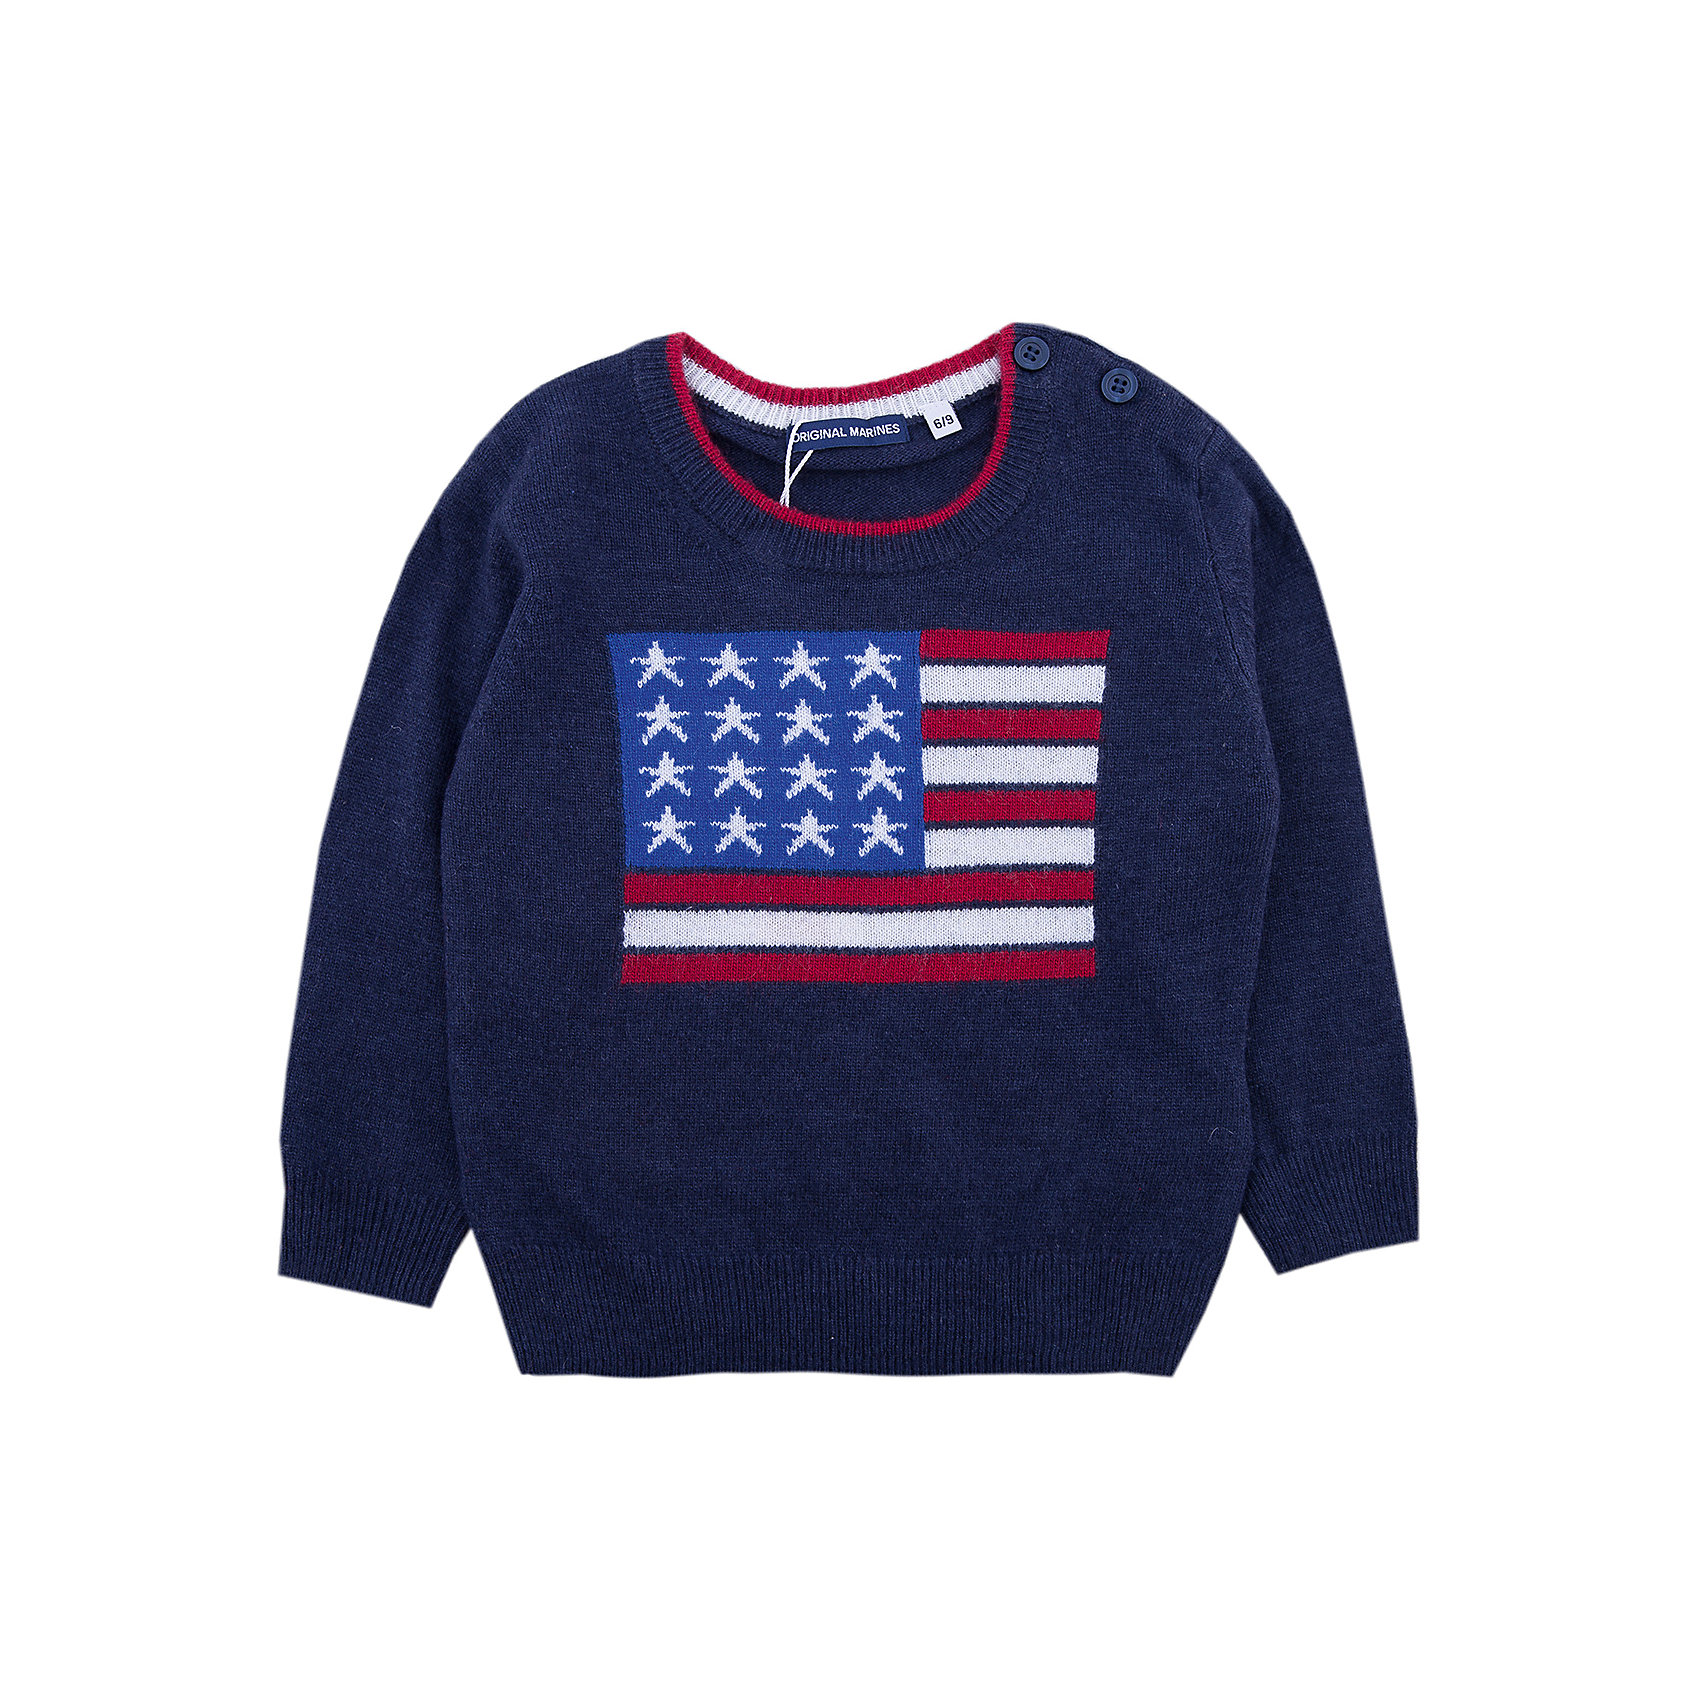 Магазины original marines. Ориджинал Маринес. Original Marines детская лого. Красно синий свитер. Оригинал Маринес одежда детская джемпера для мальчиков.